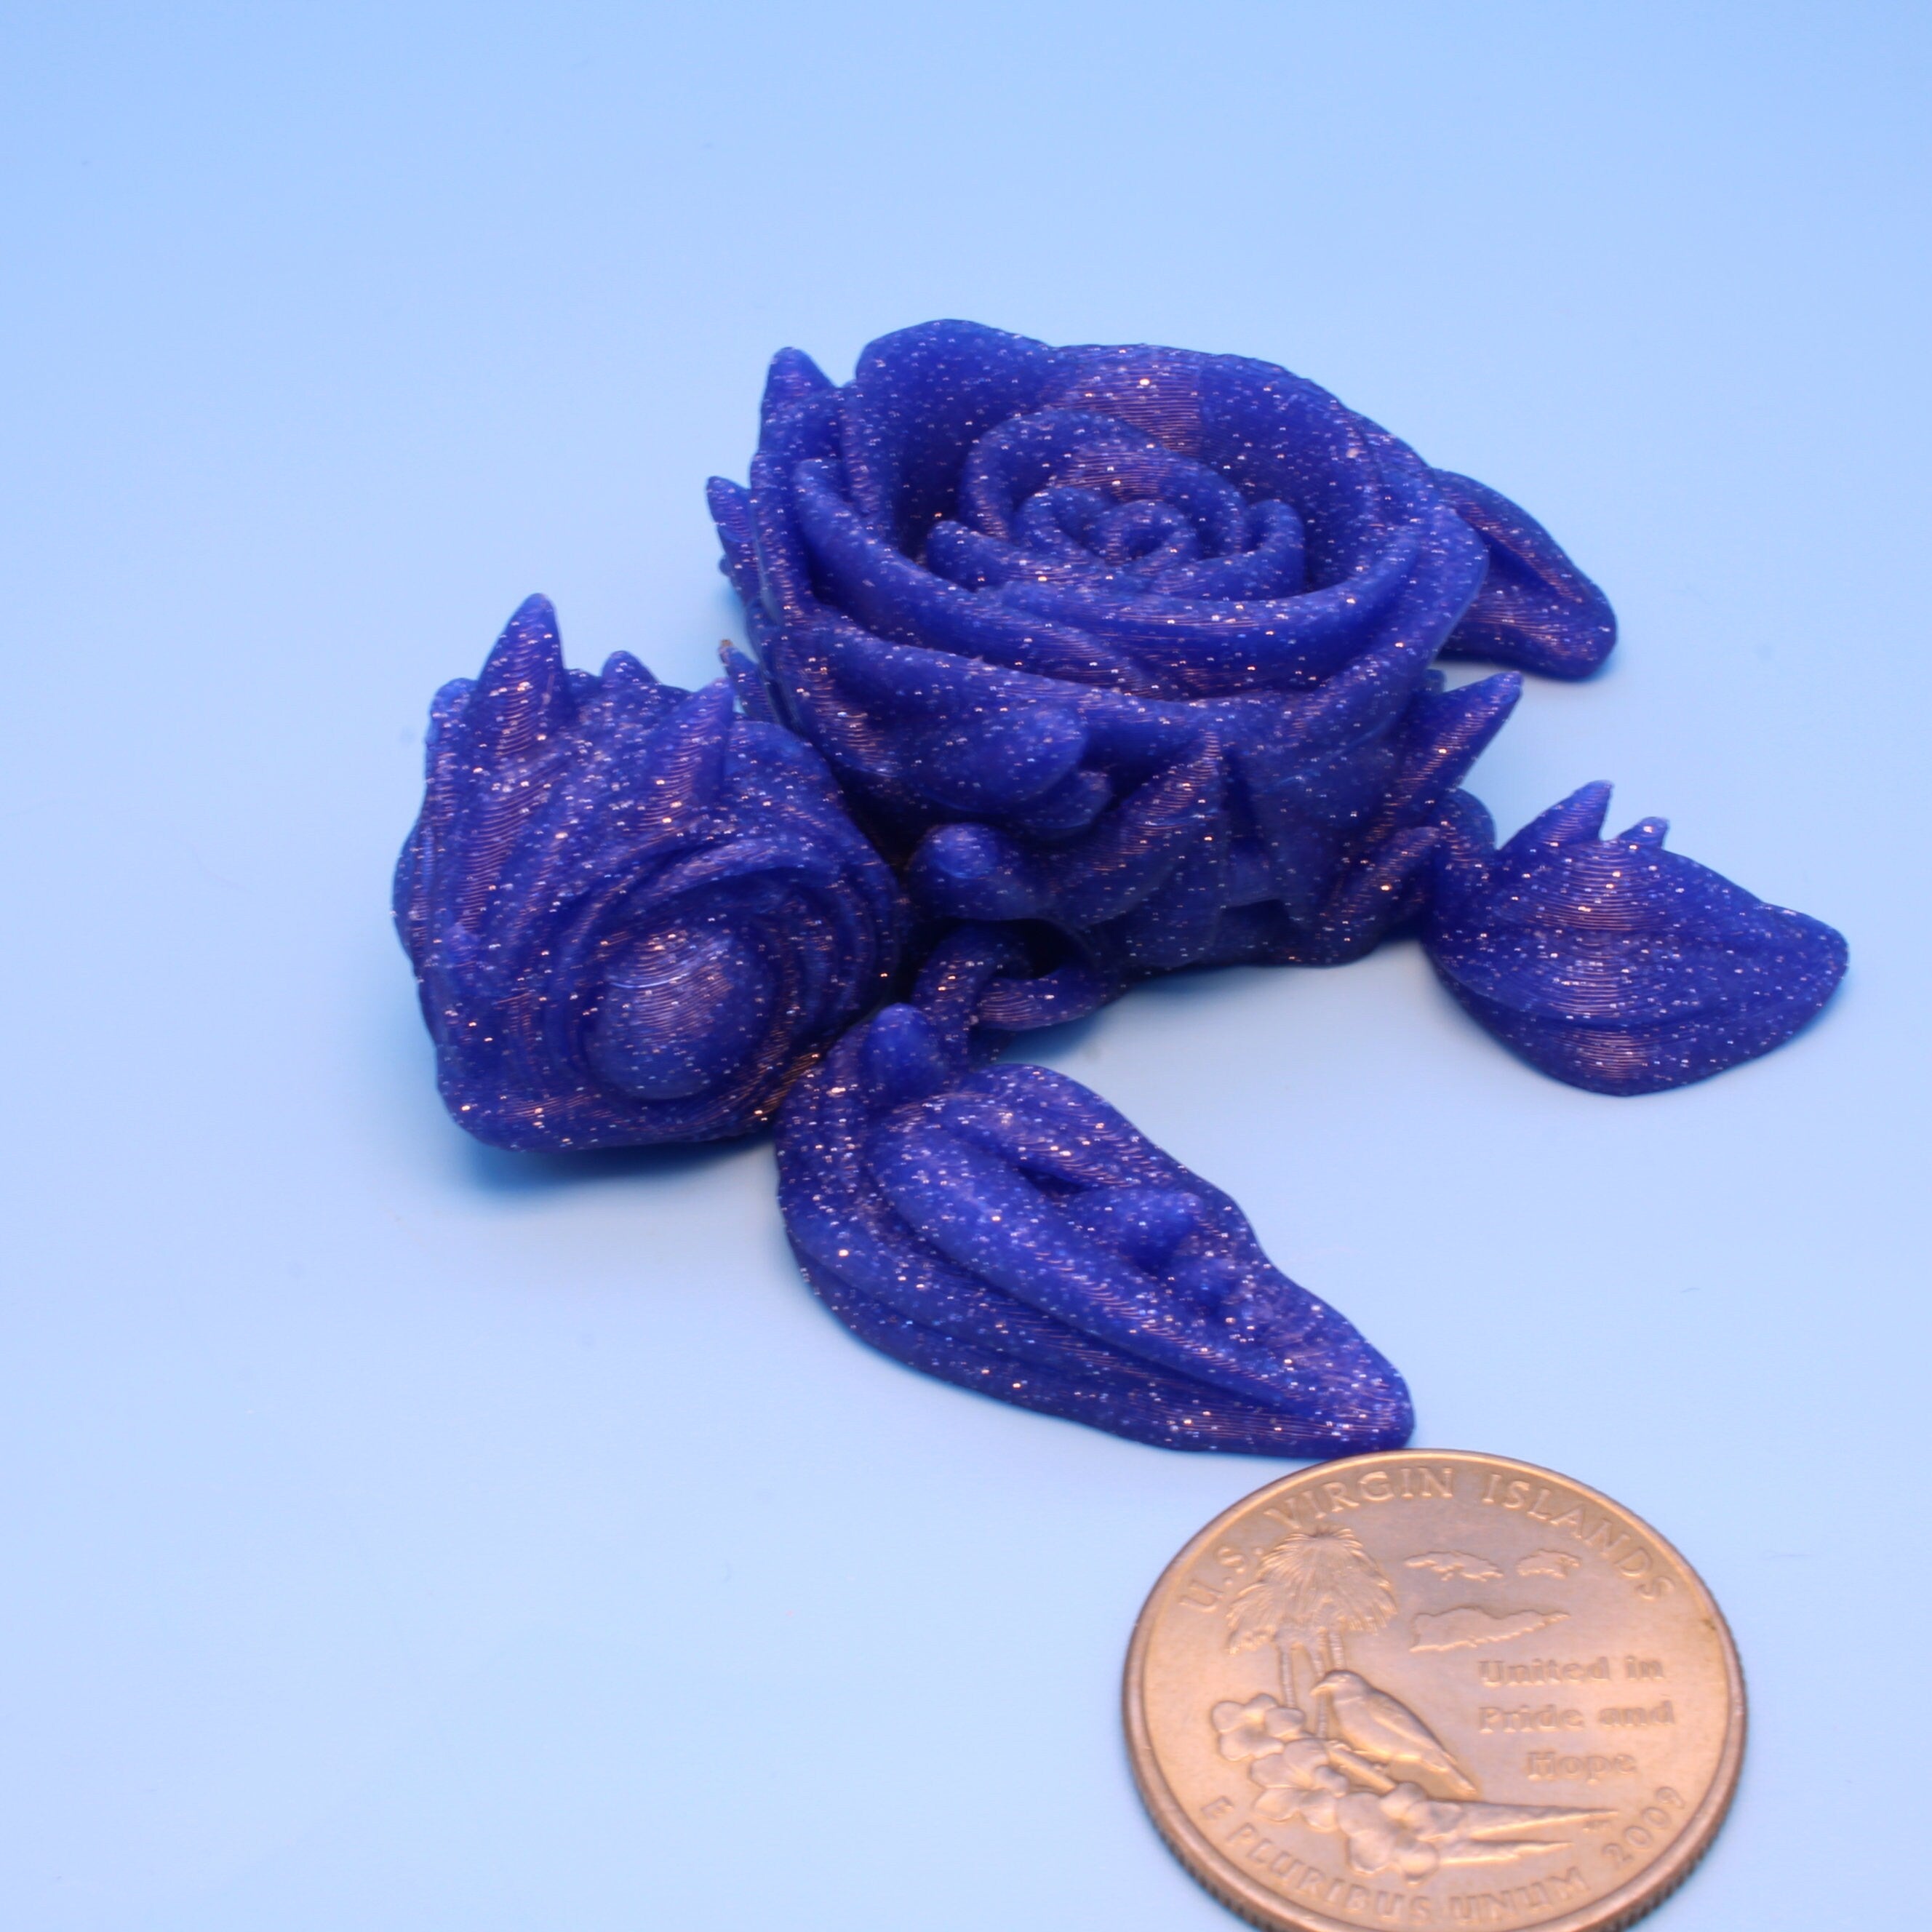 Rose Turtle- Roseurtle | 3D Printed | 3 in.